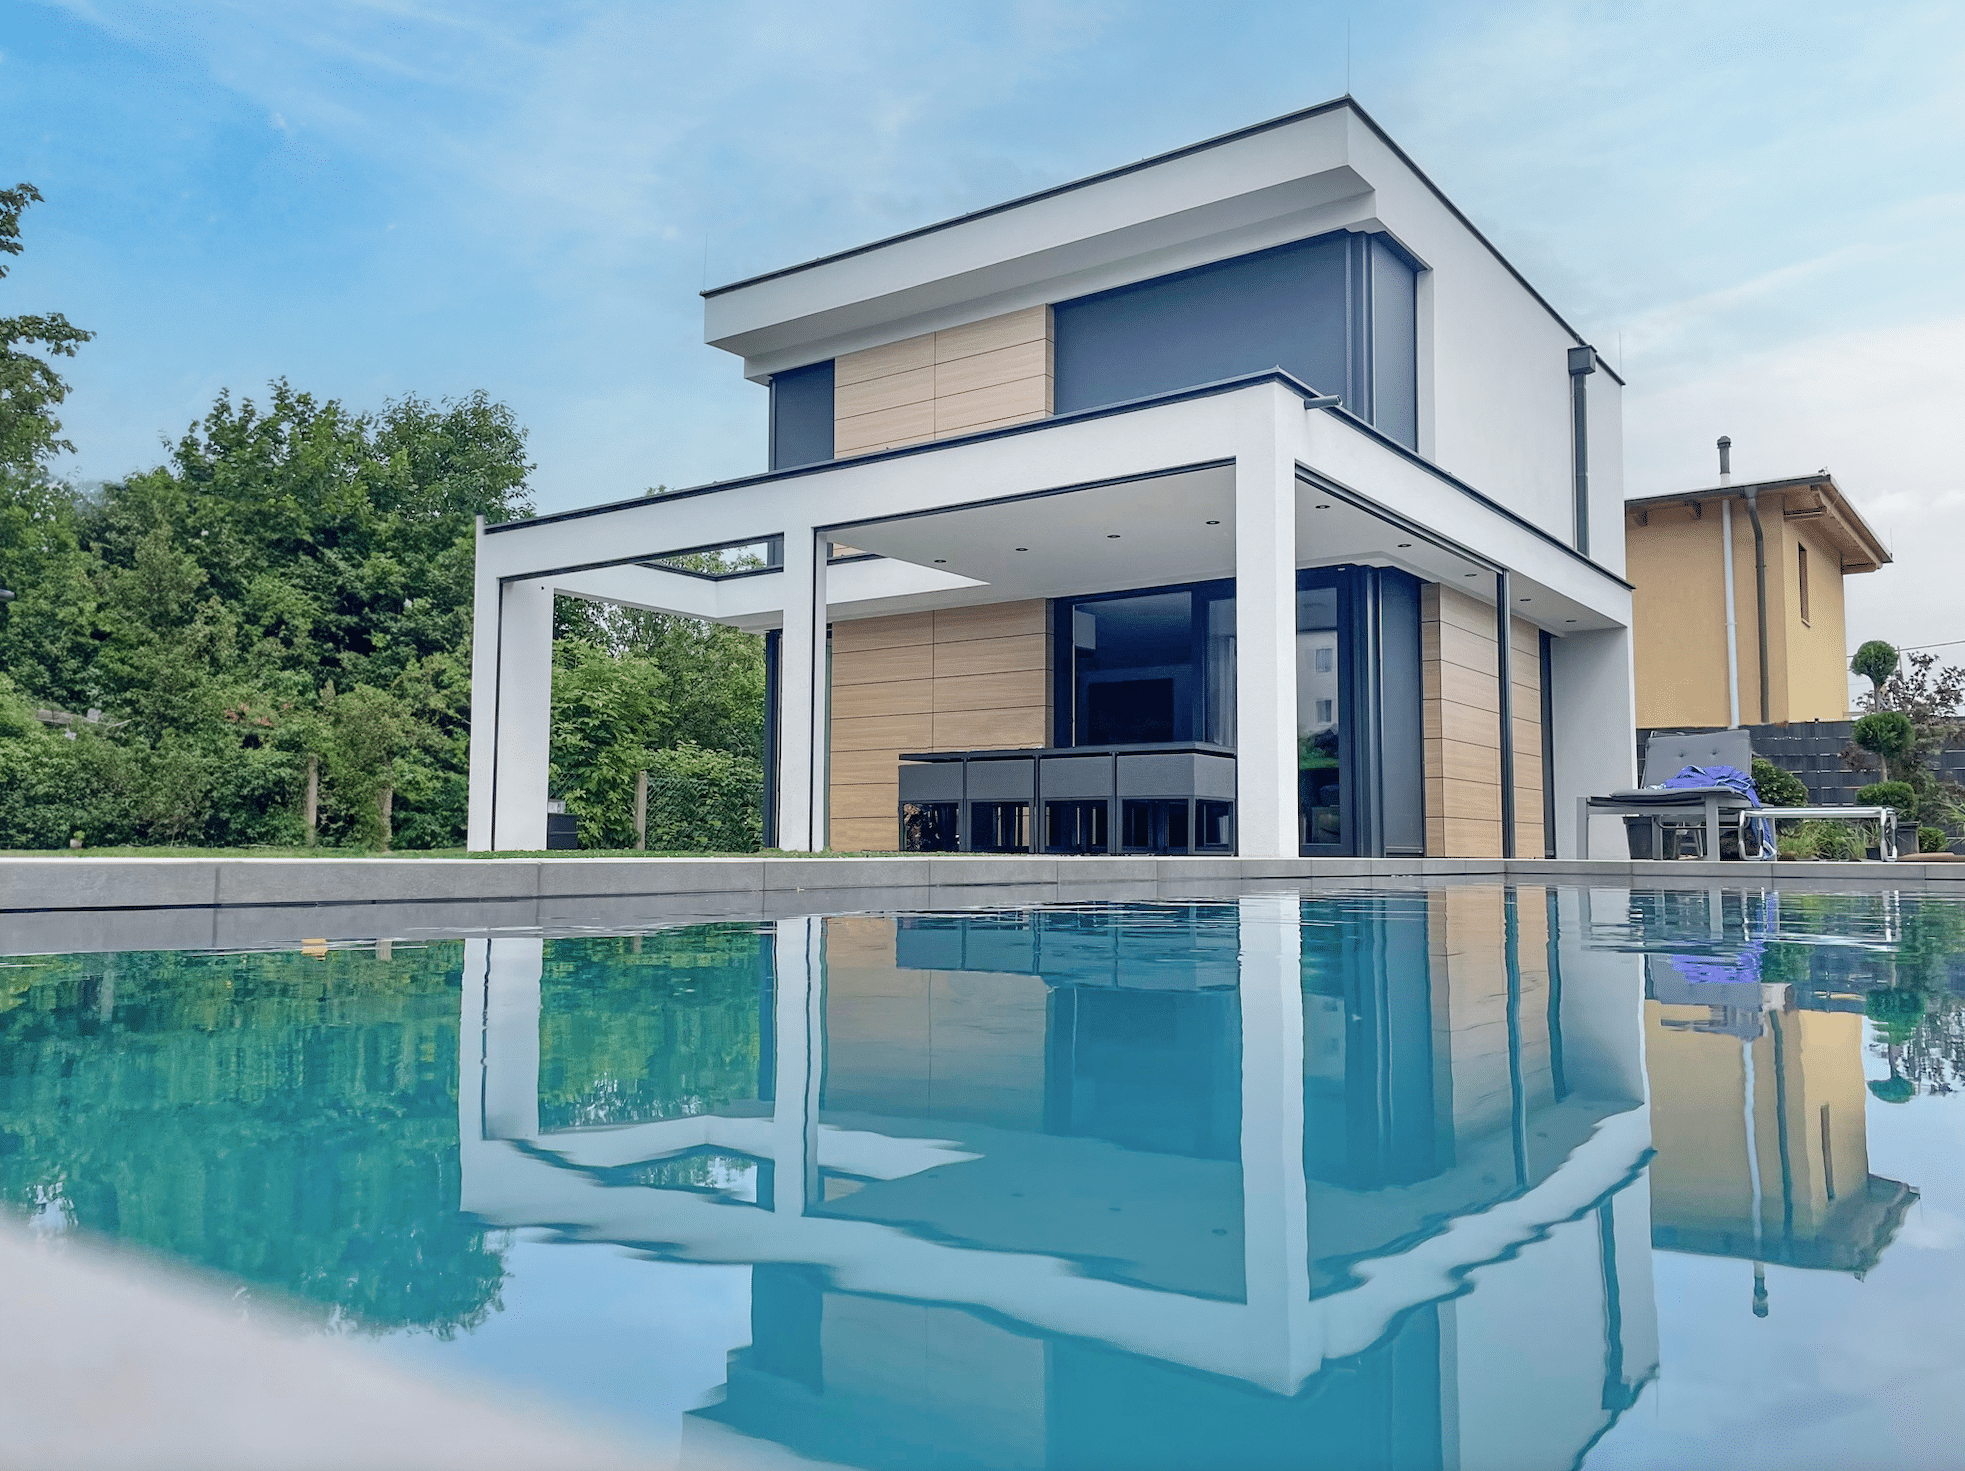 DIALOG Haus präsentiert ein modernes Einfamilienhaus mit Flachdach, weißer Putzfassade inkl. gemauerter Terrassenüberdachung mit Säulen und großem Pool davor.